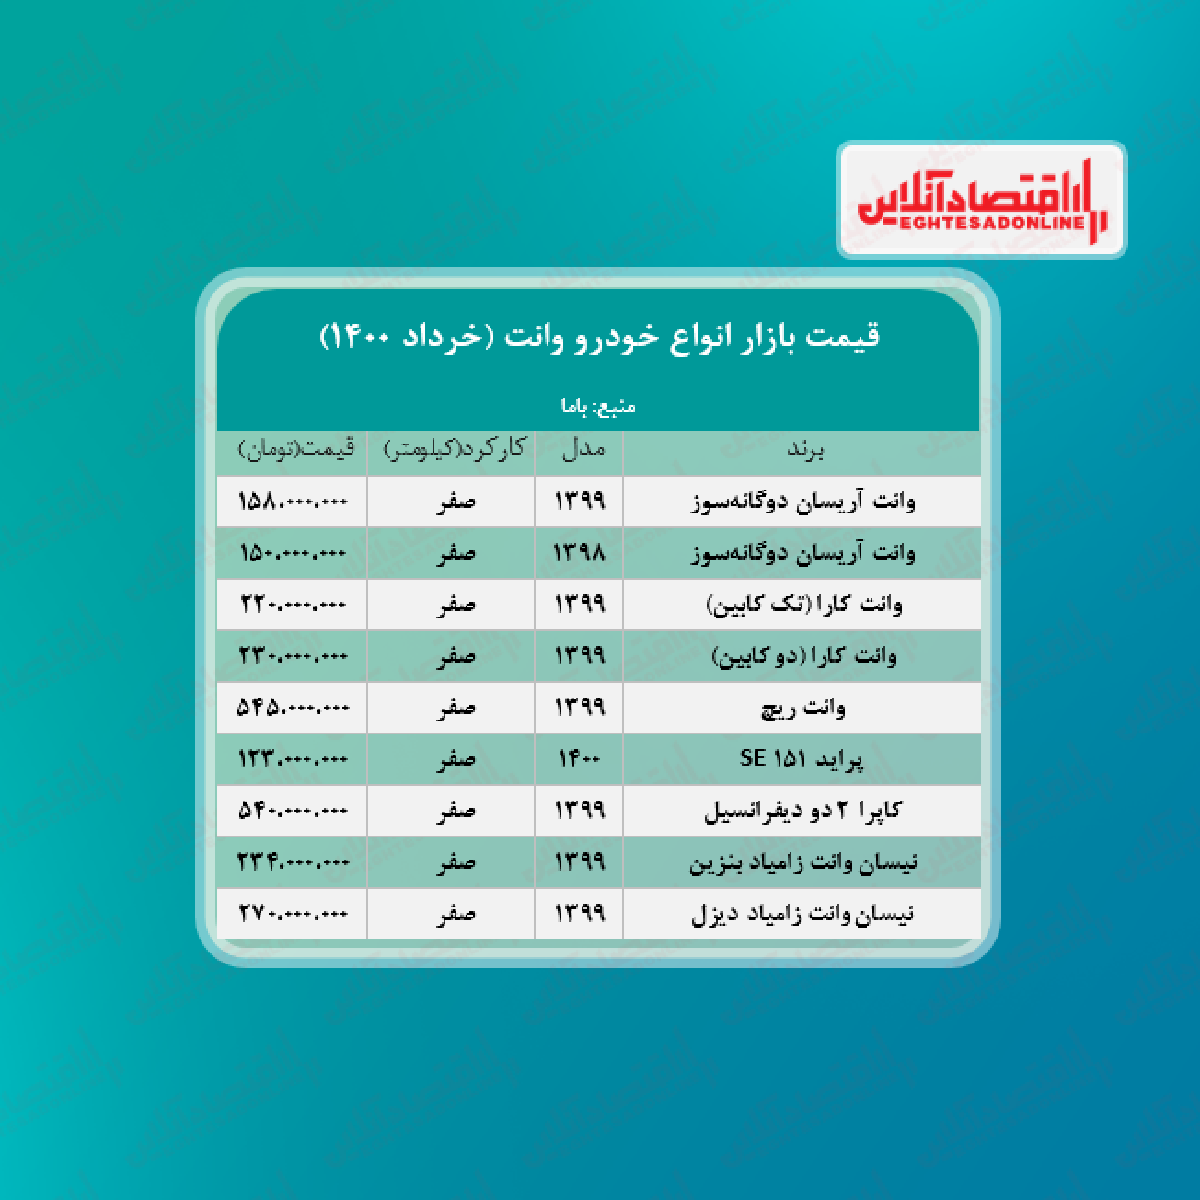 قیمت وانت در هفته دوم خرداد + جدول